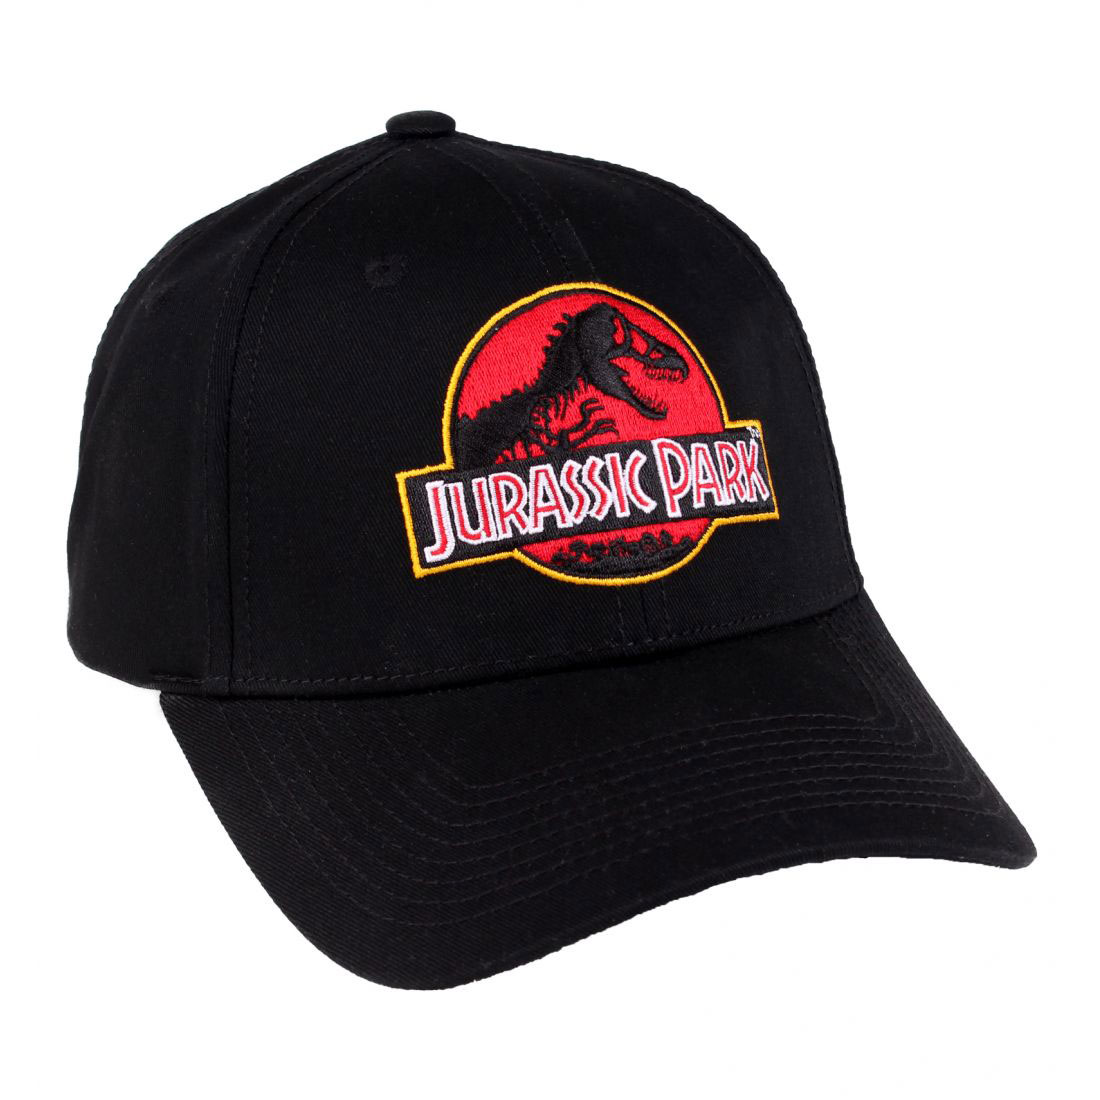 Jurassic Park casquette baseball Logo